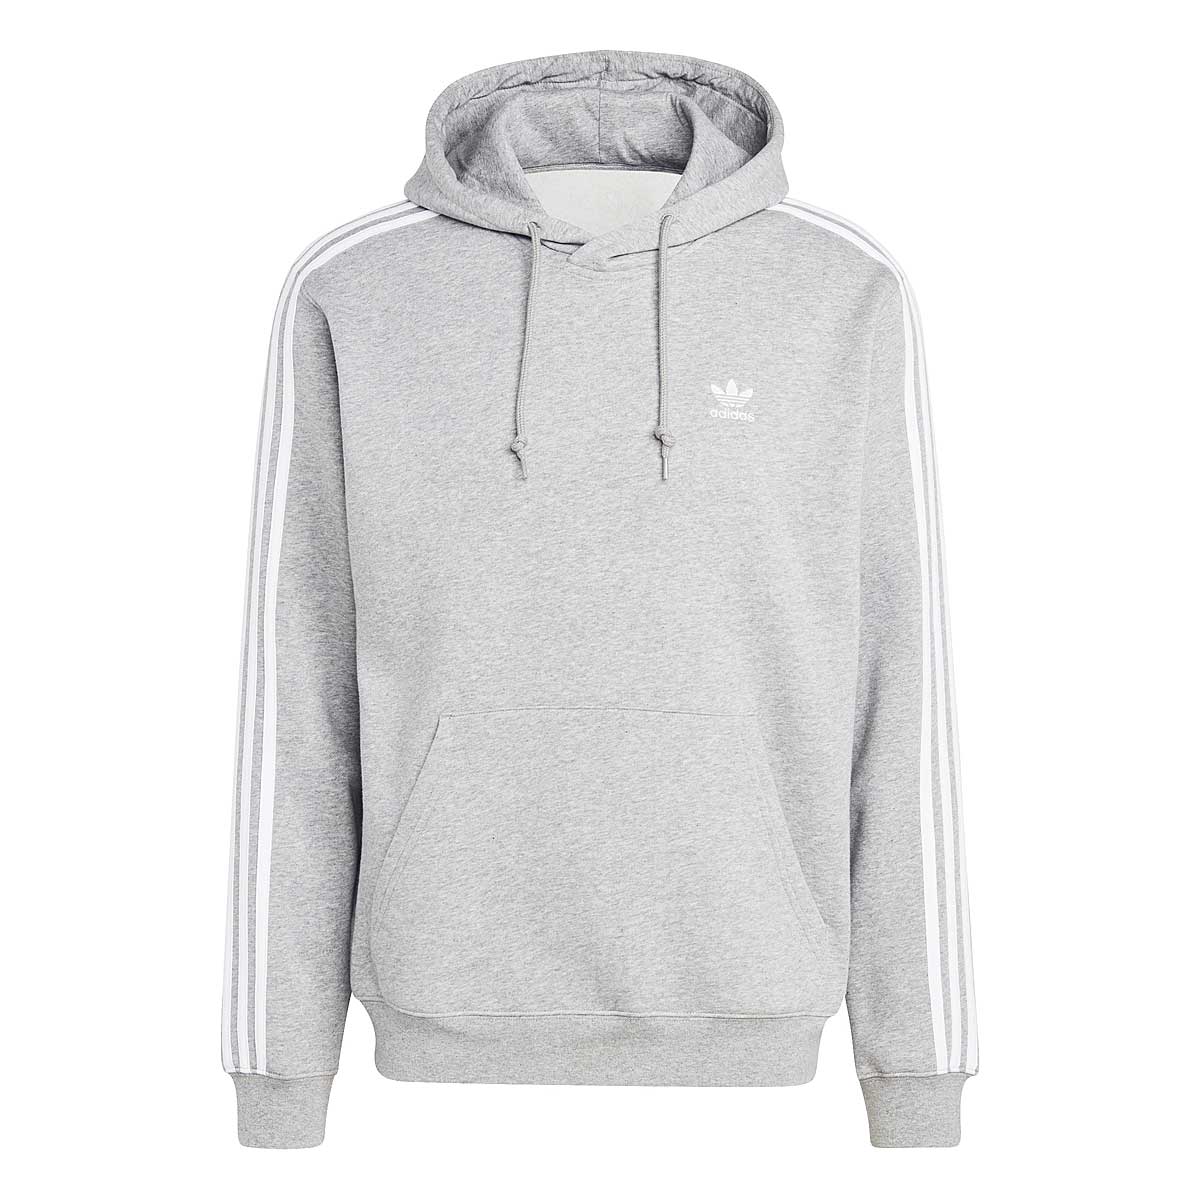 Adidas 3-stripes Hoody, Grey L